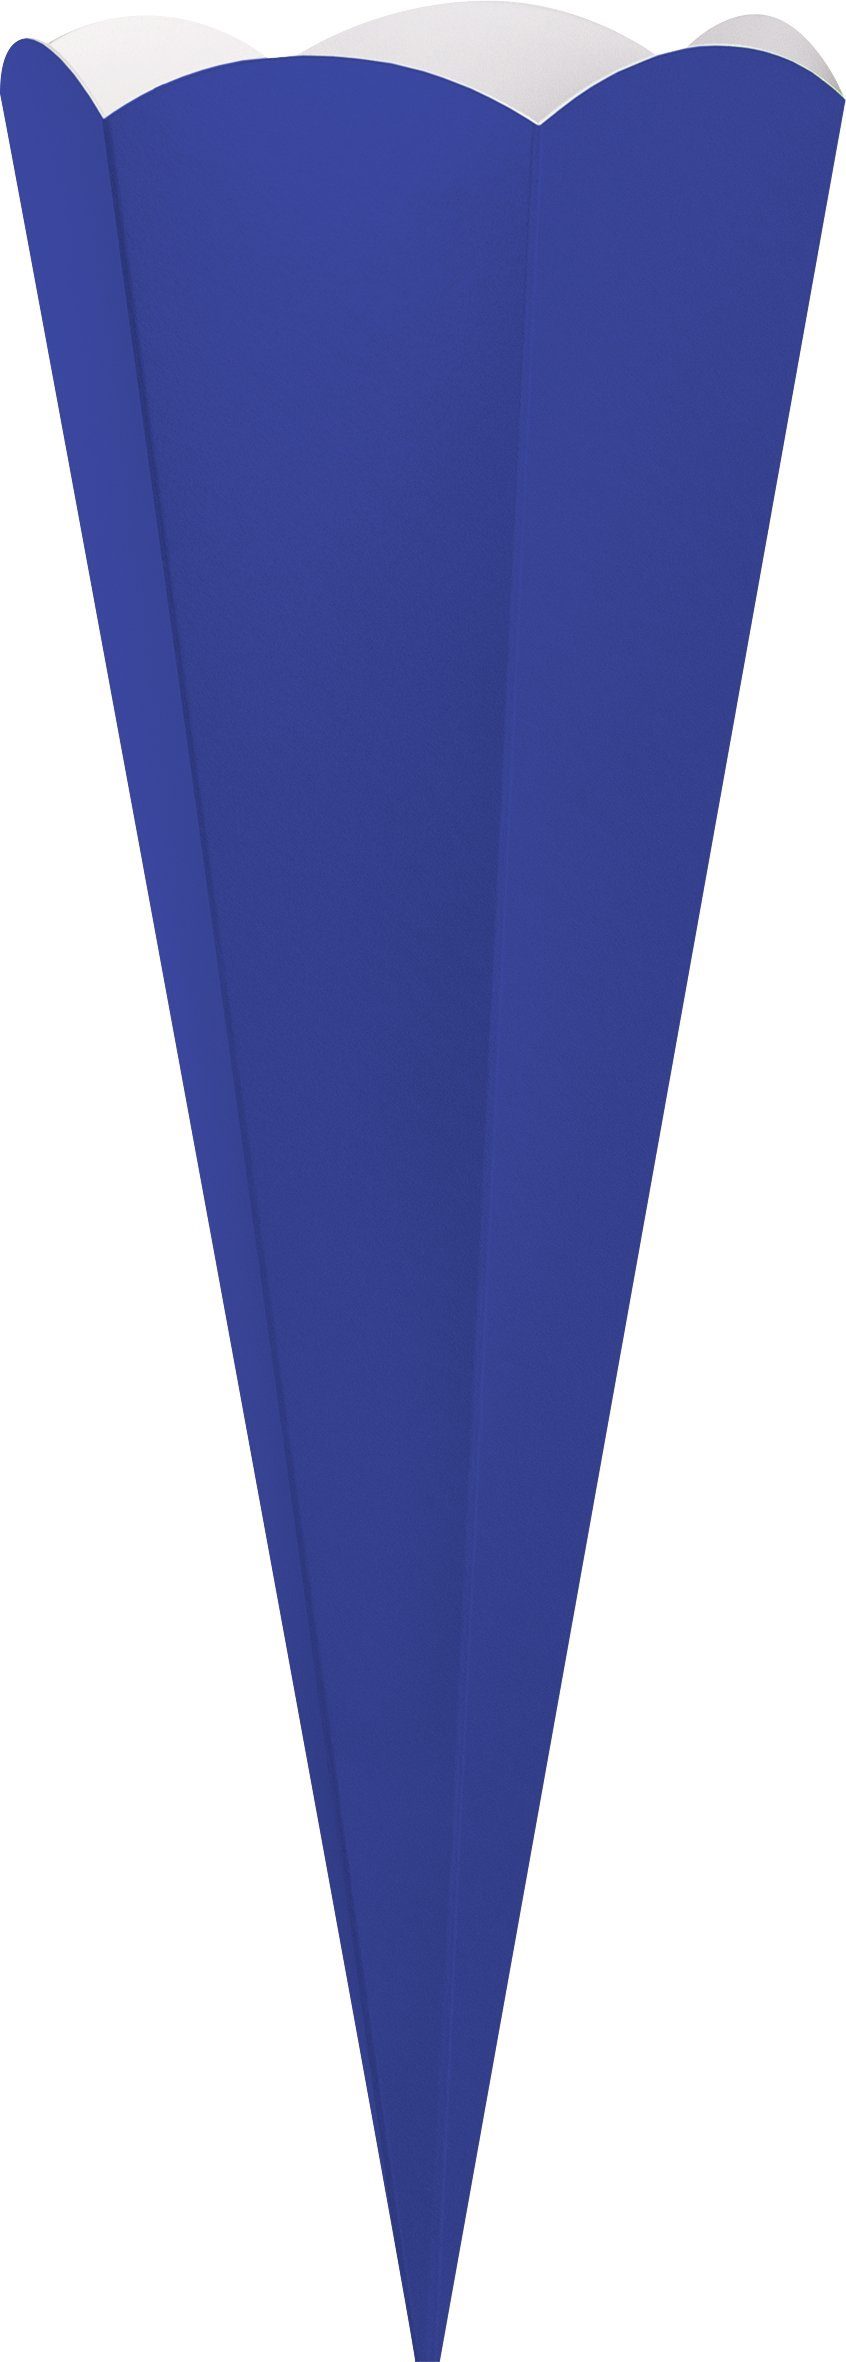 Heyda Schultüte Geschwister-Schultüten-Zuschnitt, 41 cm Königsblau